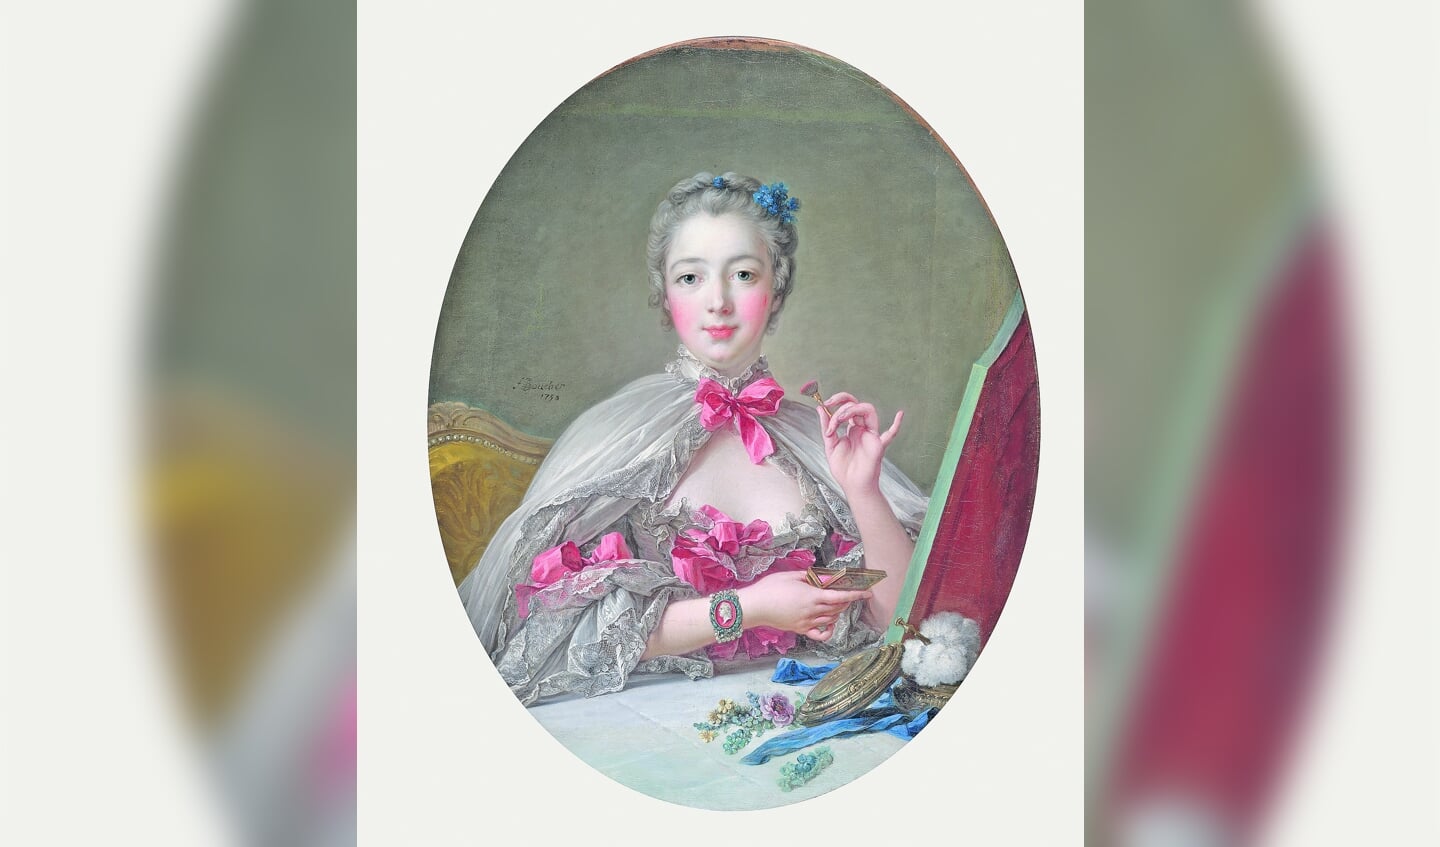 Madame de Pompadour had talloze volgelingen. (foto: François Boucher, 1750 via Harvard Arts Museums).